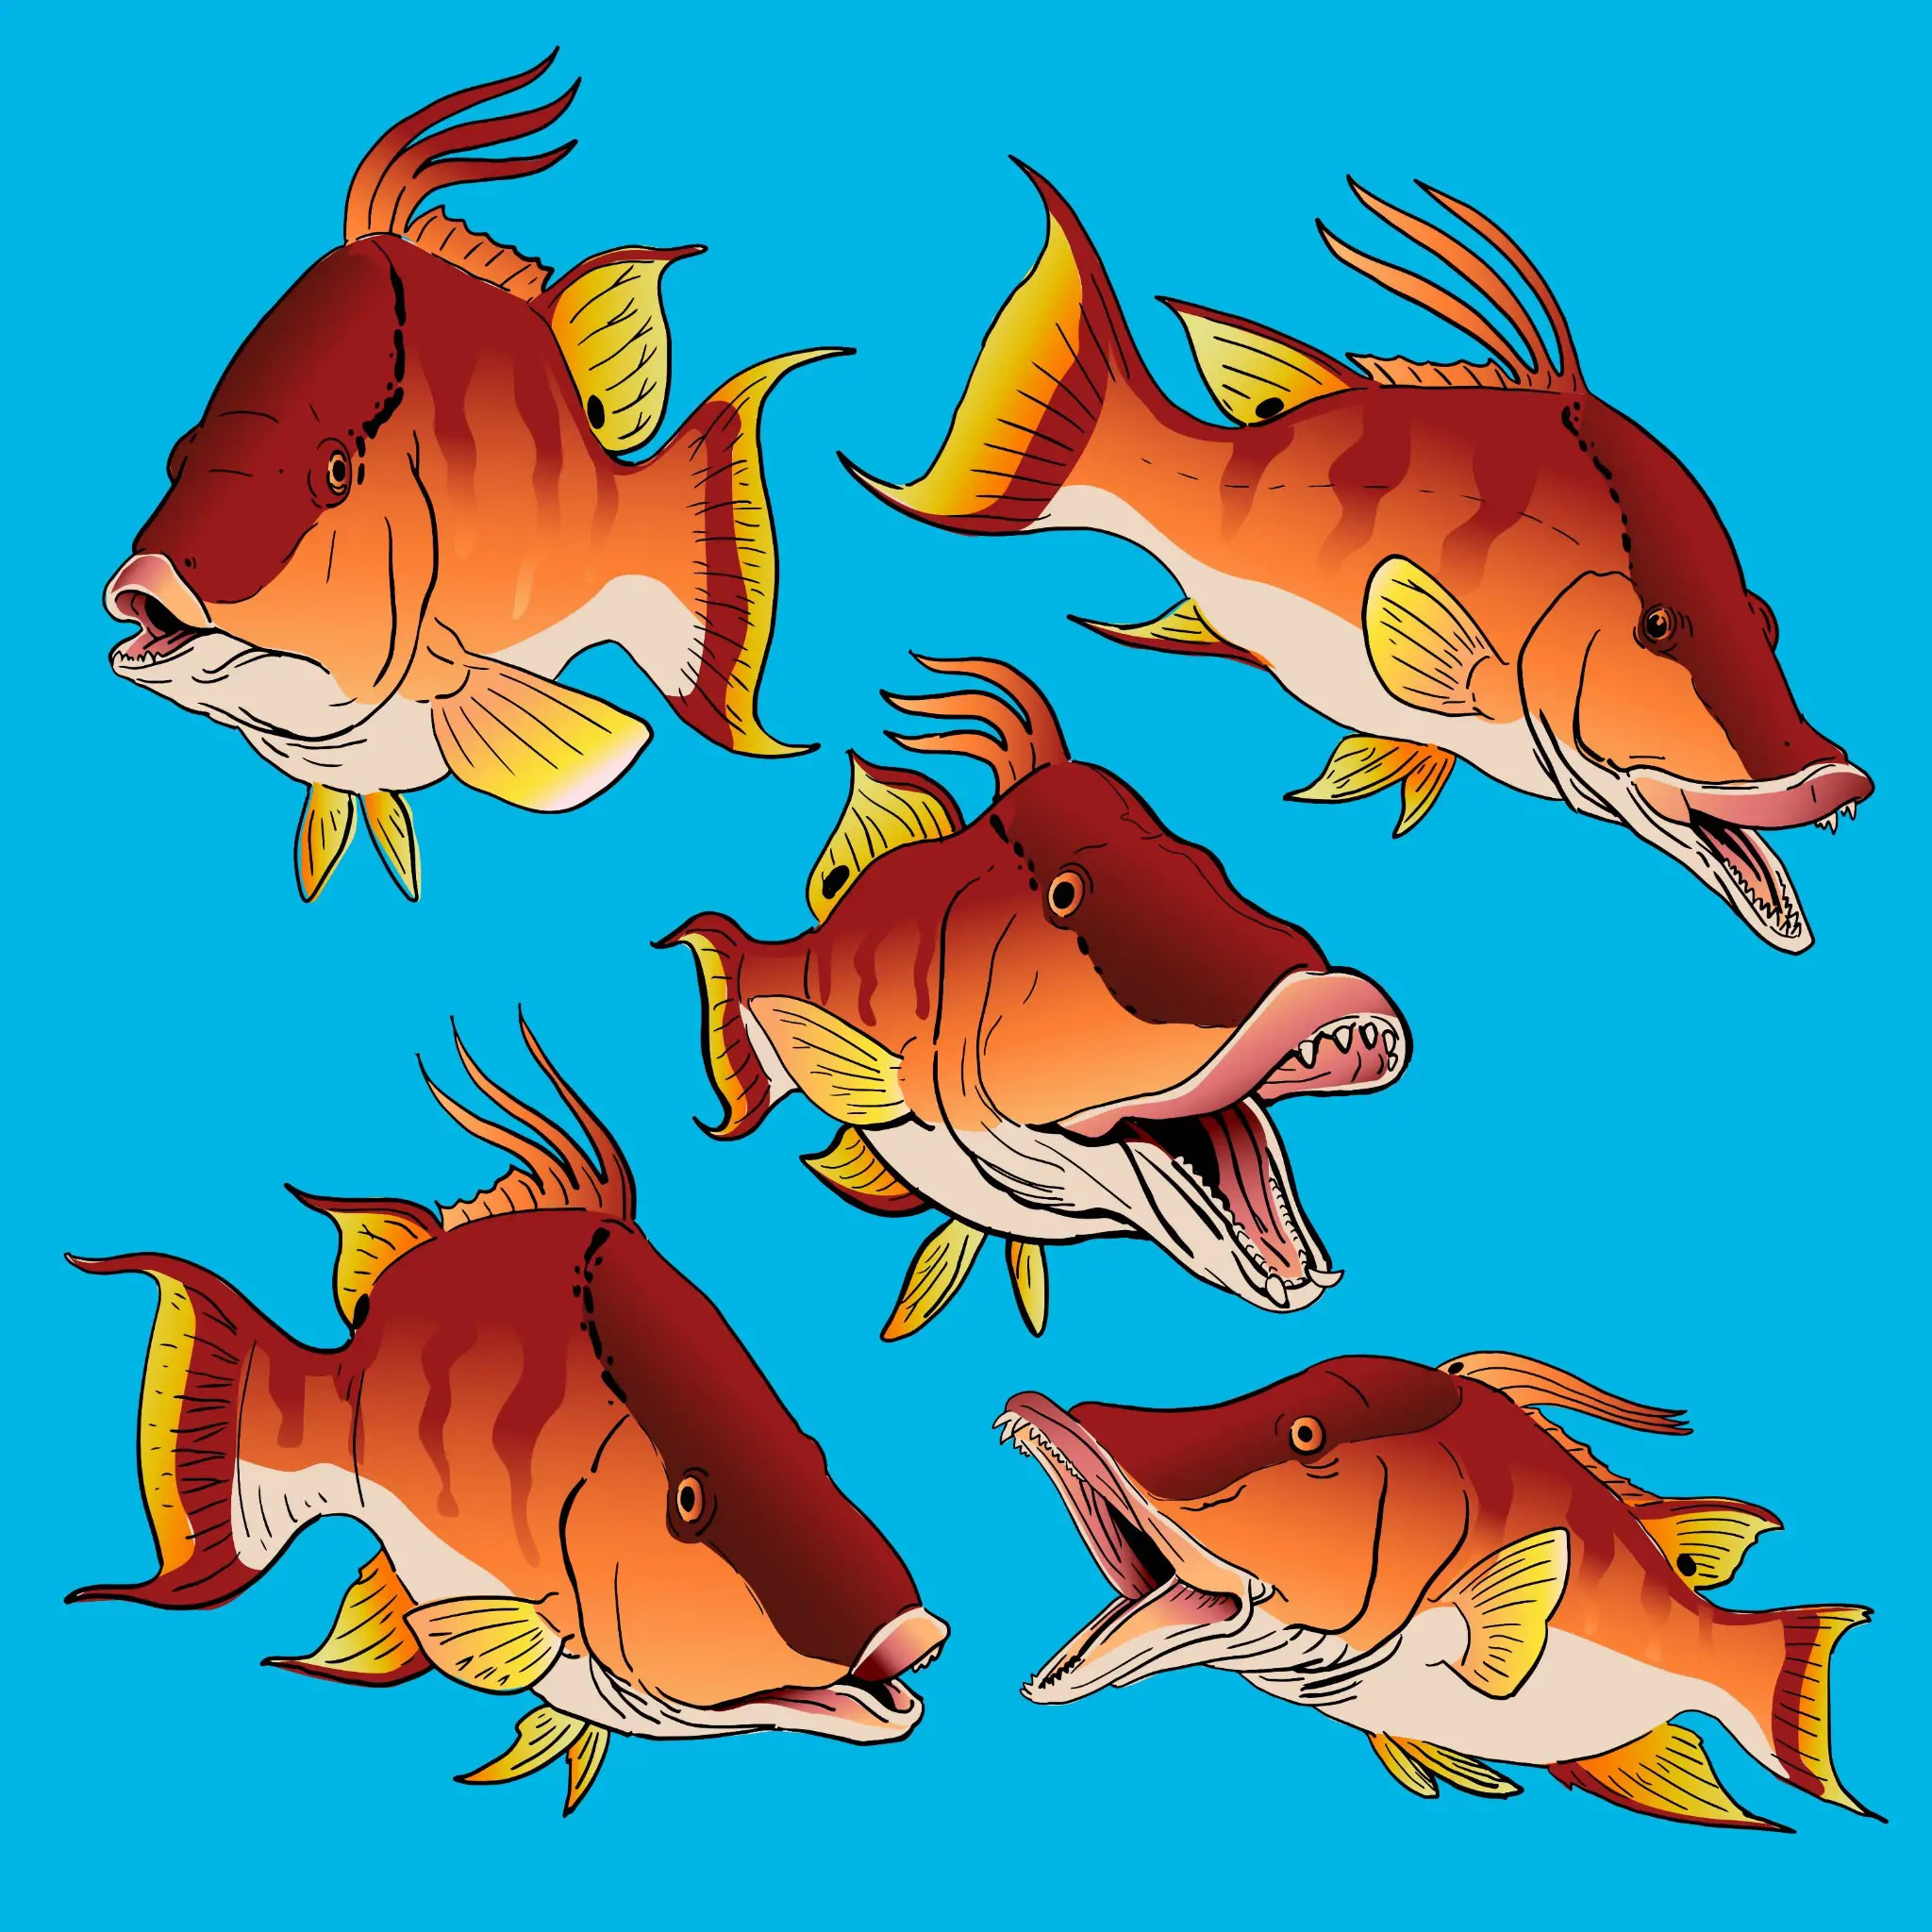 Hogfish